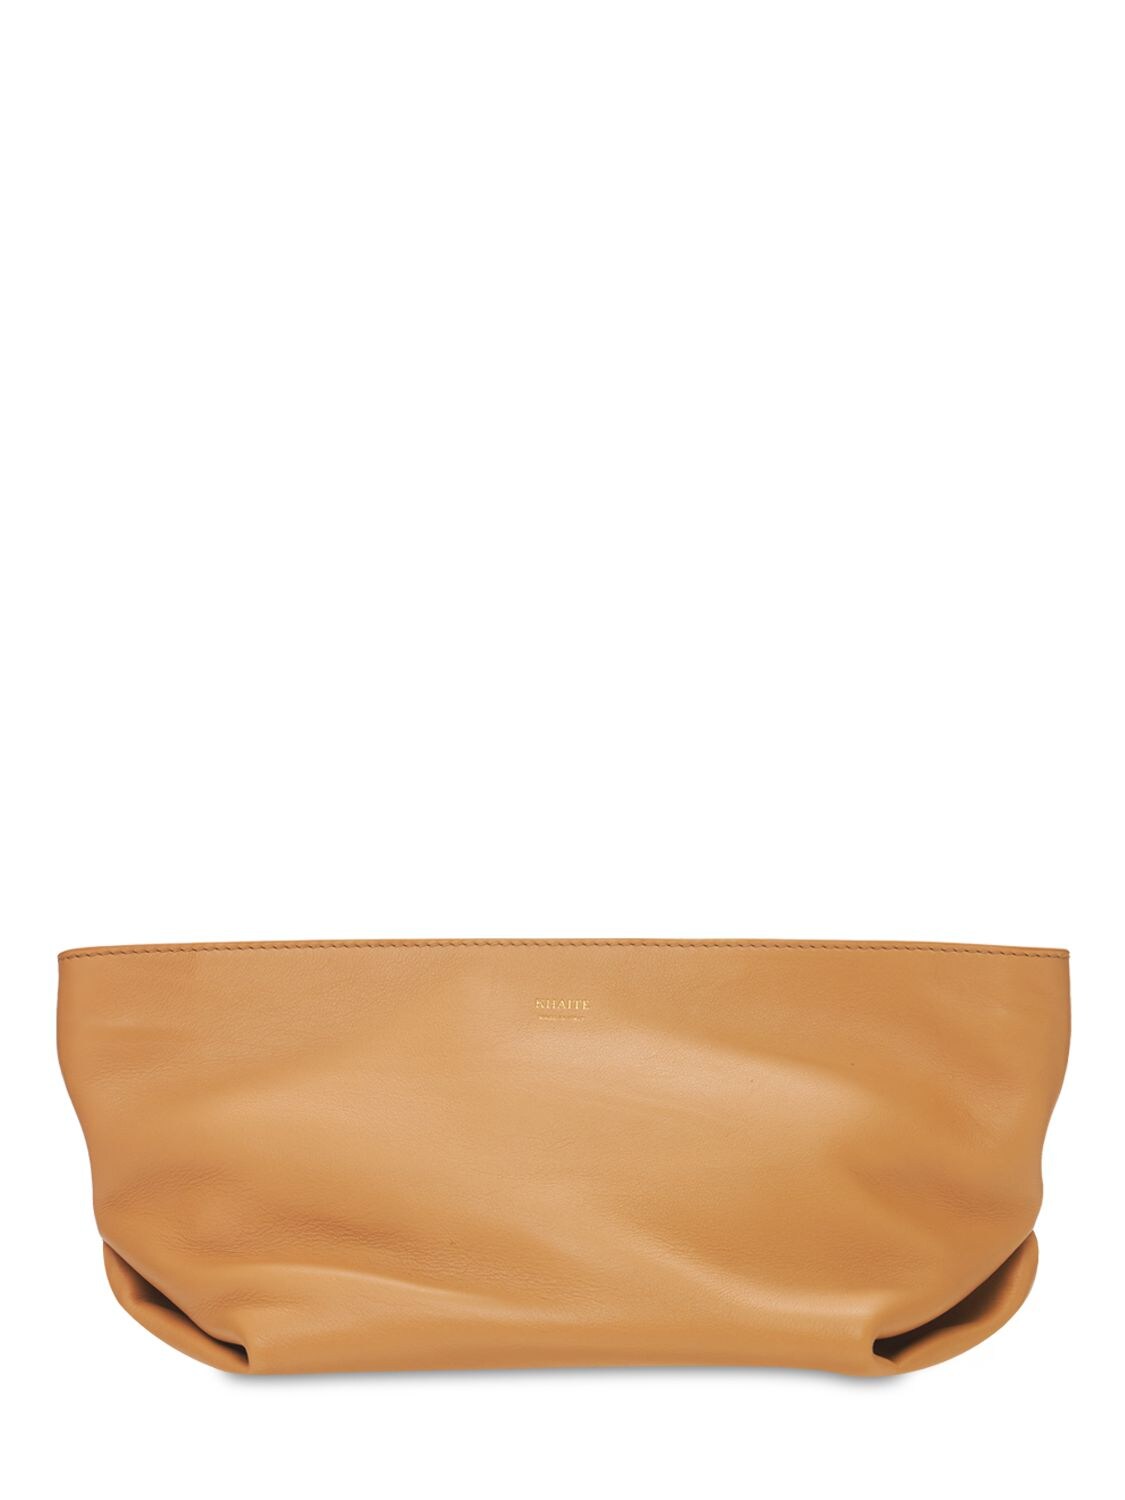 Adeline Patent Leather Shoulder Bag